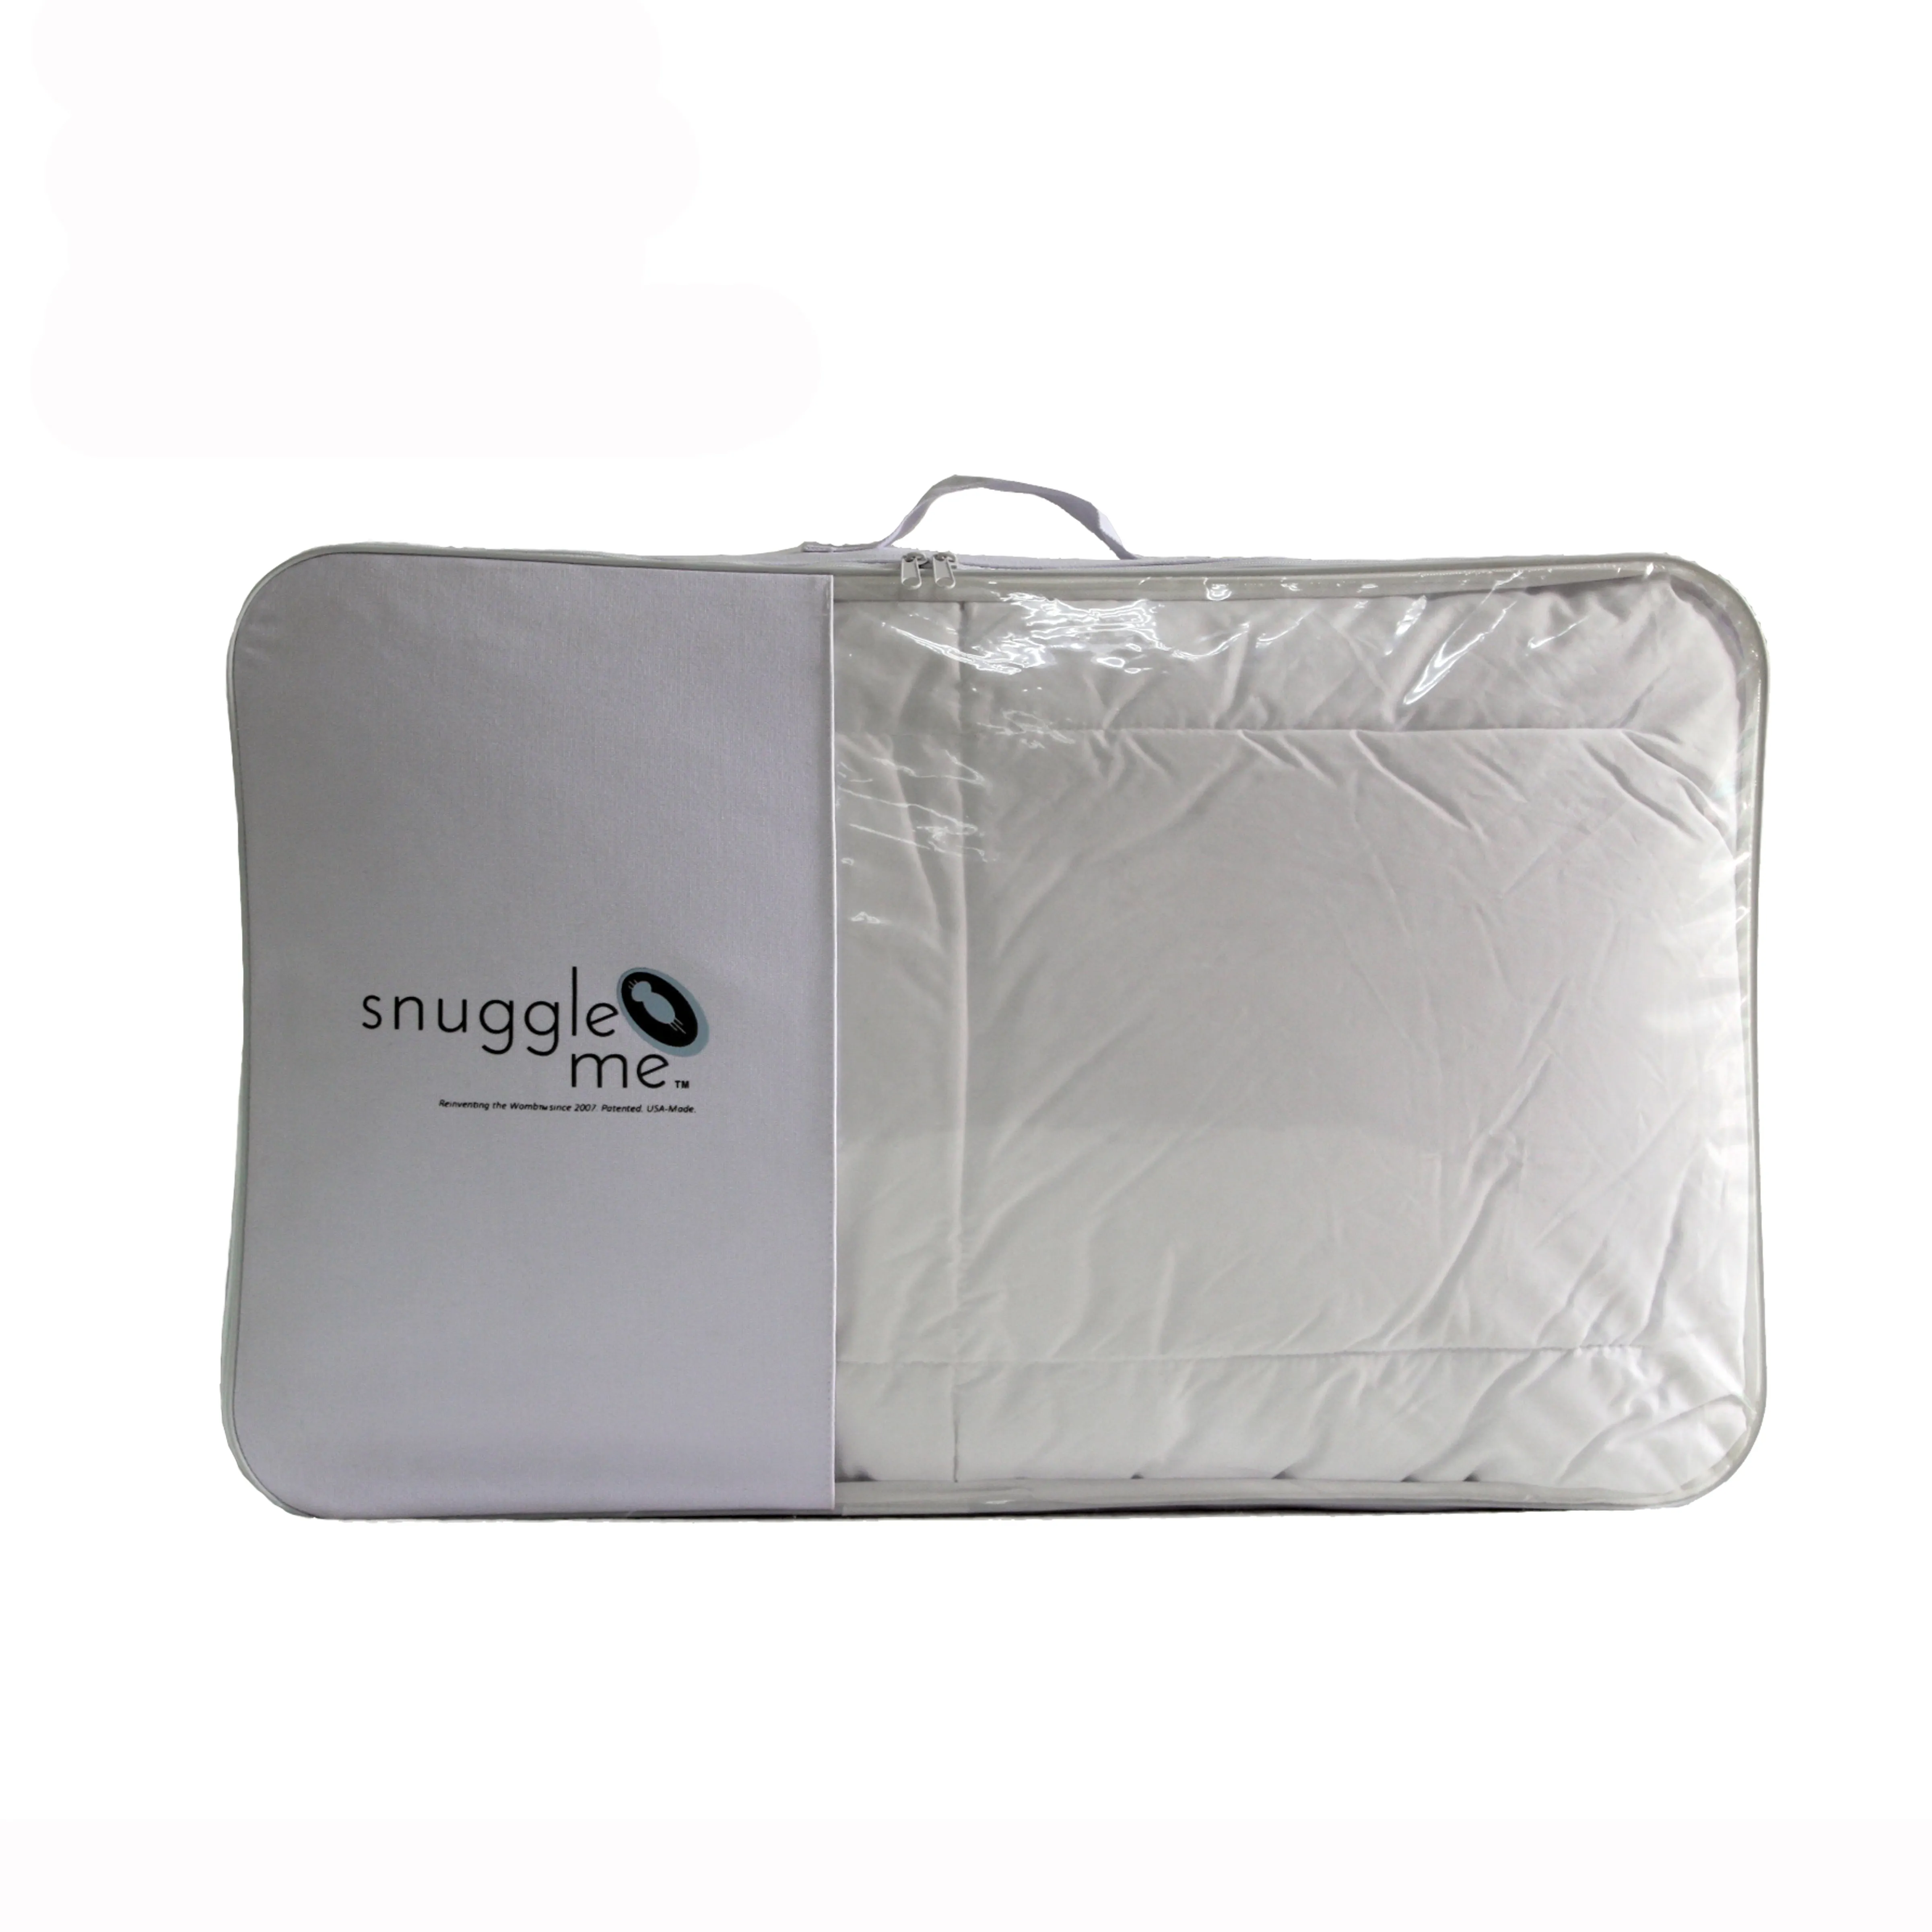 Trasparente di plastica trasparente in pvc di imballaggio sacchetto di polietilene per gruppi di fogli letto/trapunta/coperte